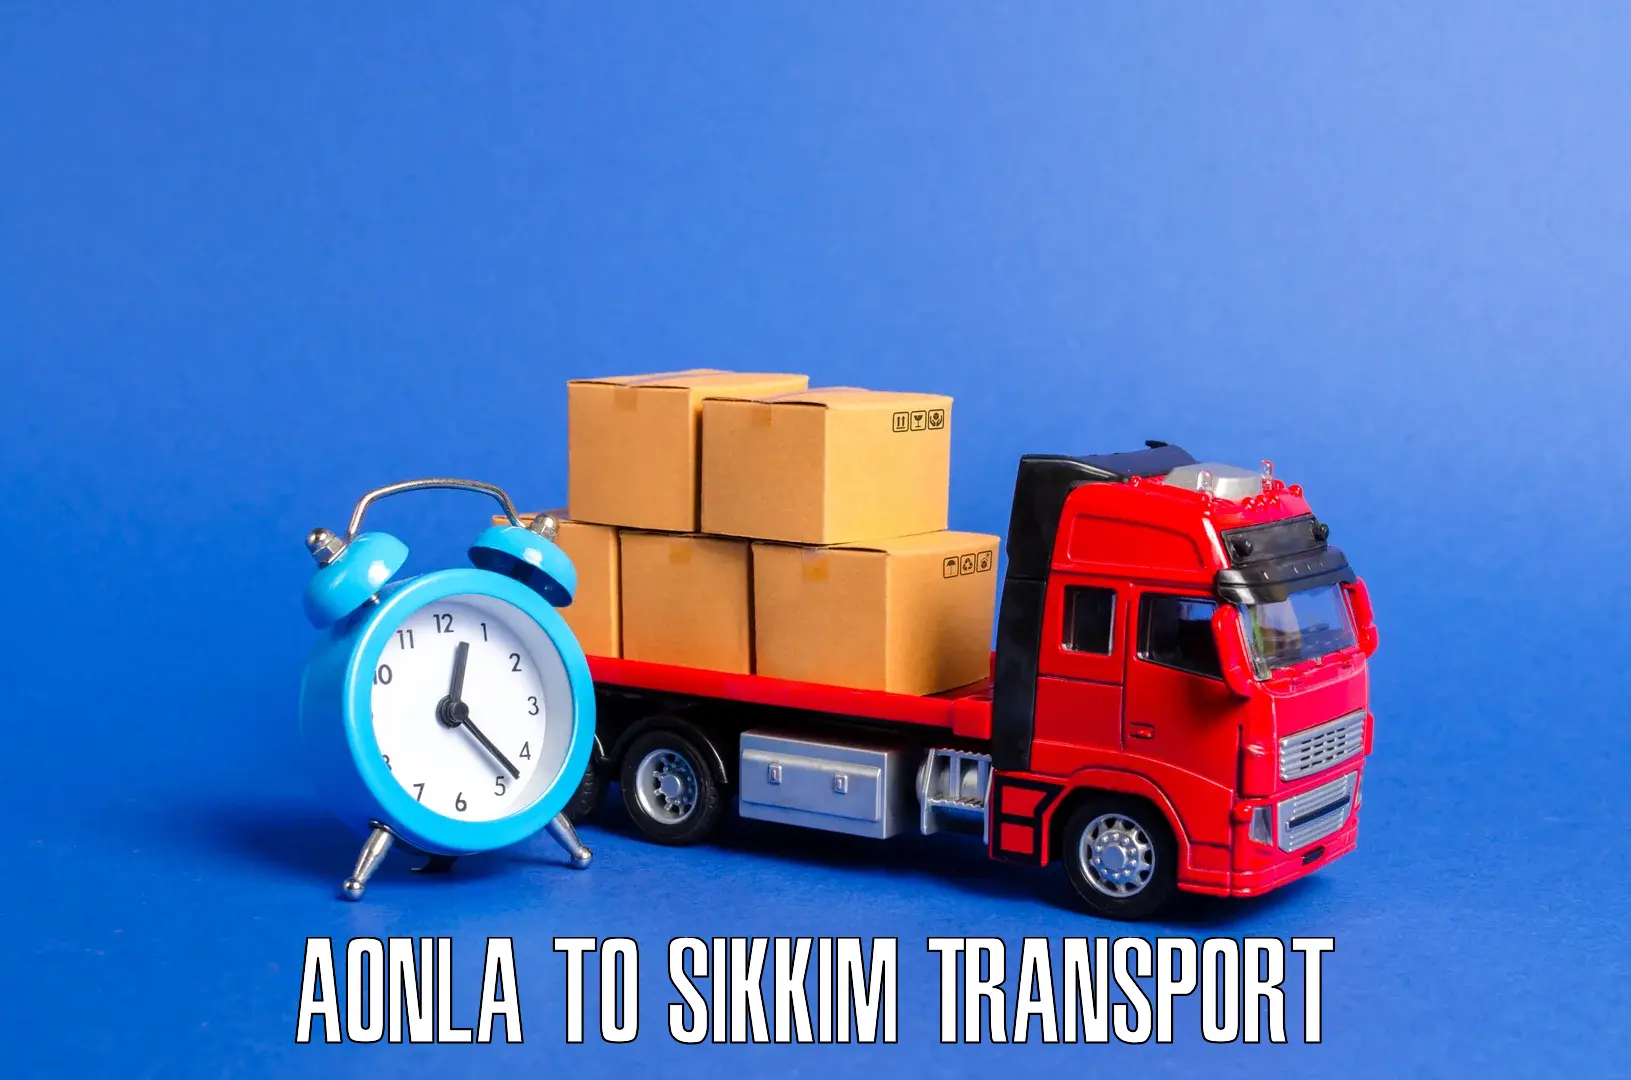 Shipping services Aonla to Gangtok